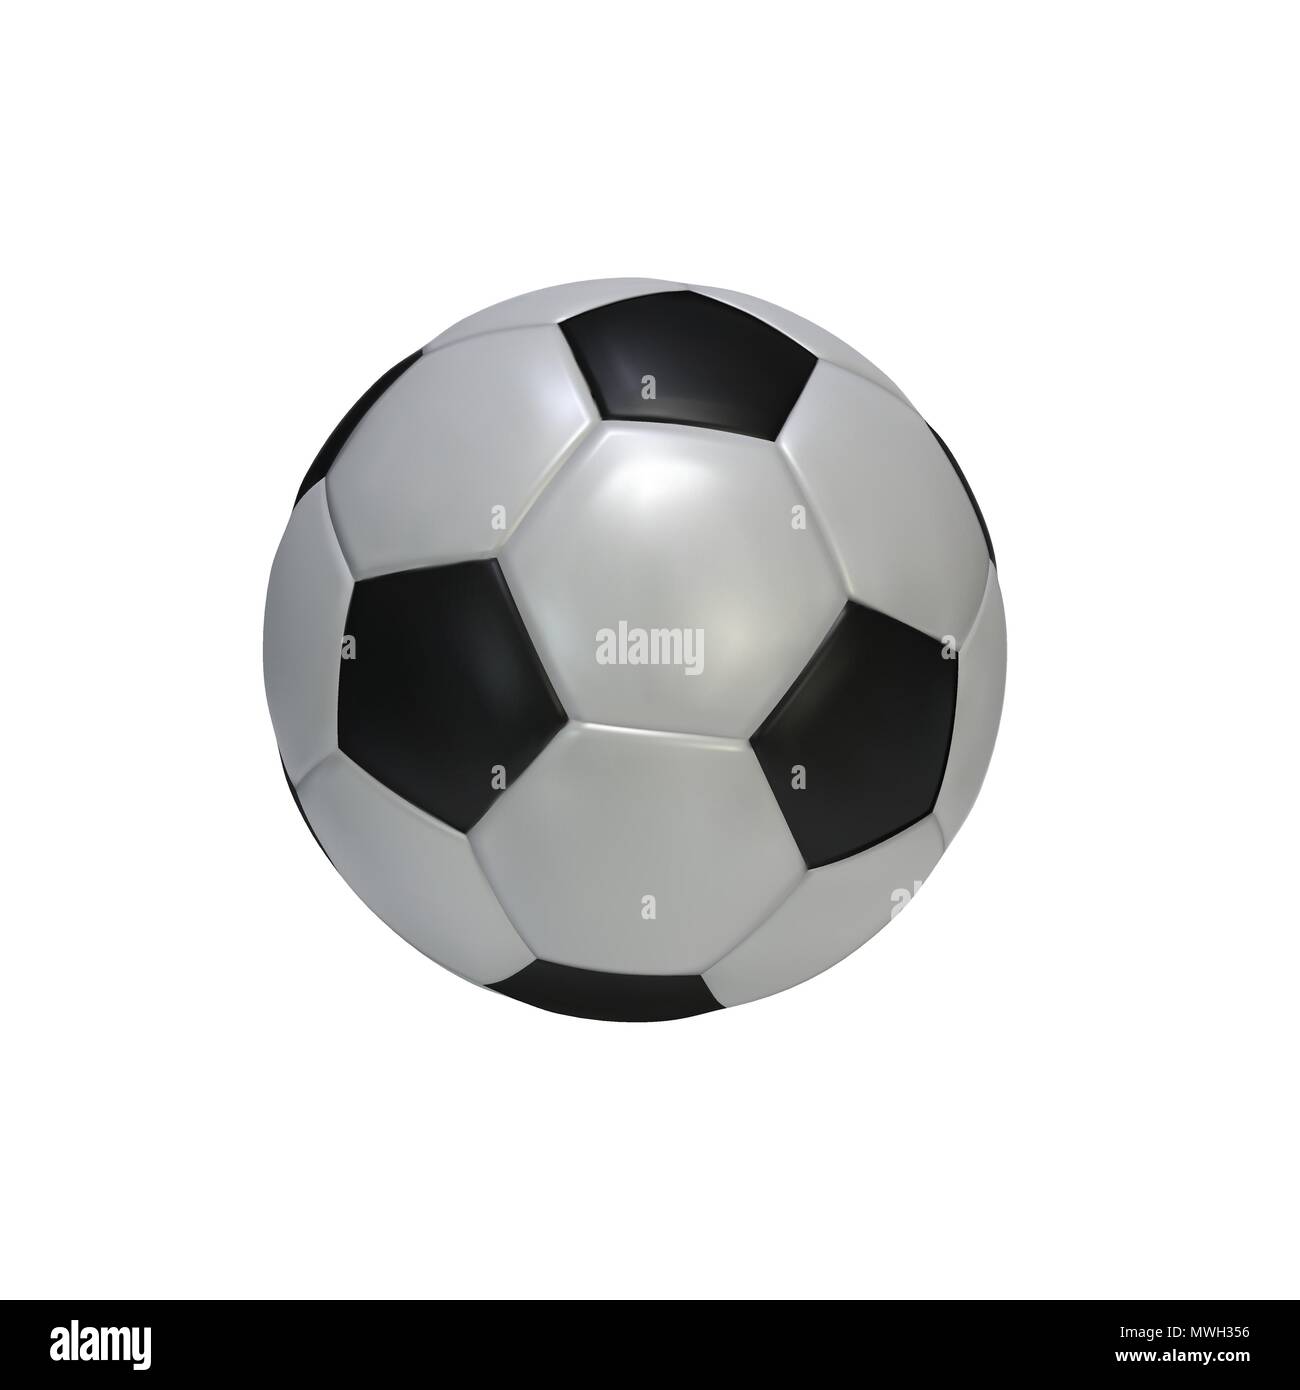 Realistica palla calcio isolati su sfondo bianco. In bianco e nero di pelle classica sfera di calcio. Illustrazione Vettoriale Illustrazione Vettoriale